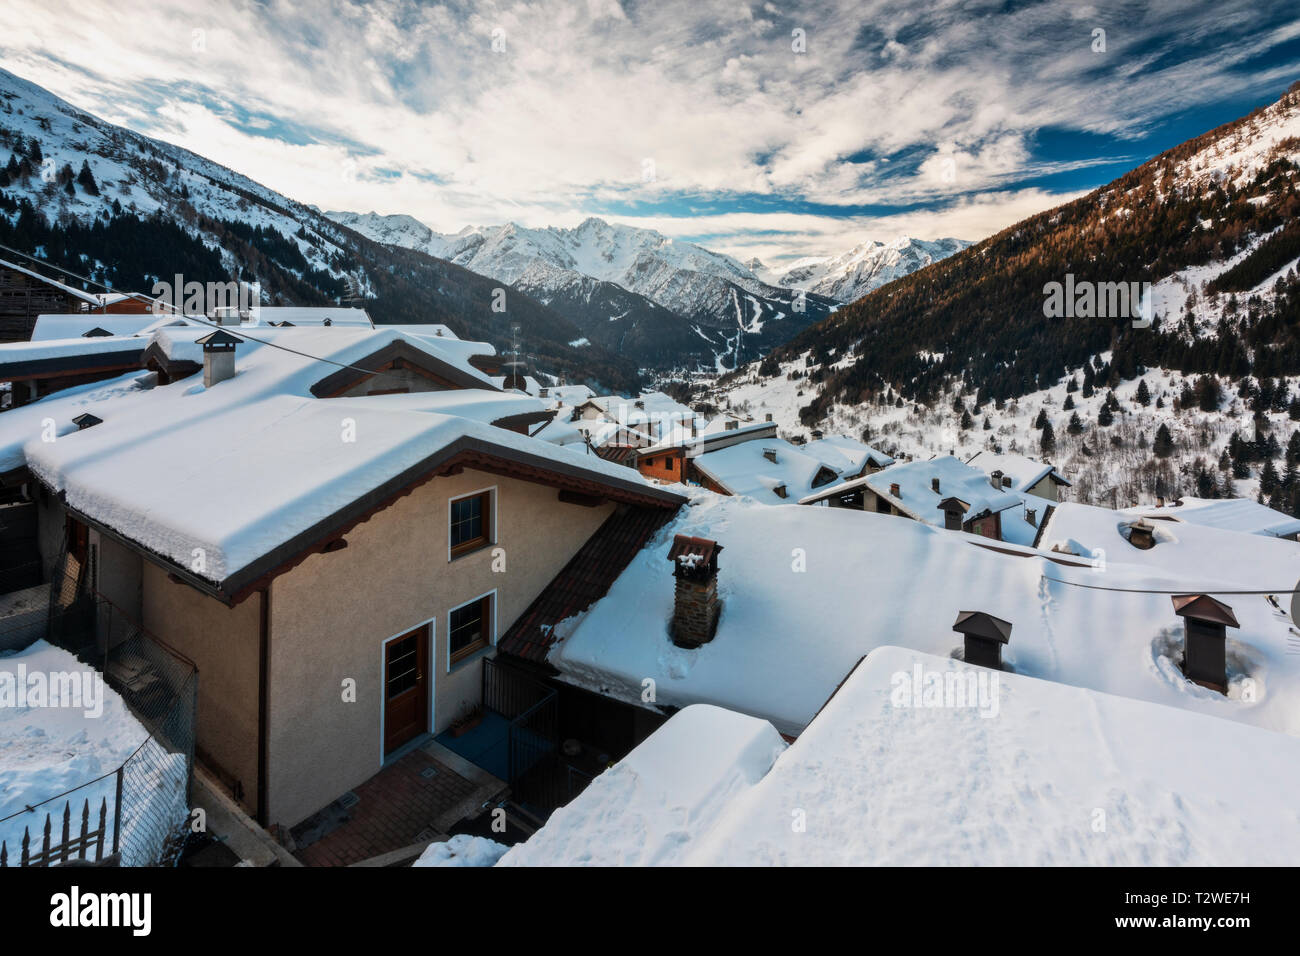 Un petit village de Pezzo, Ponte di Legno, sous la neige. Vallecamonica dans la province de Brescia dans la région Lombardie en Italie, Europe district Banque D'Images